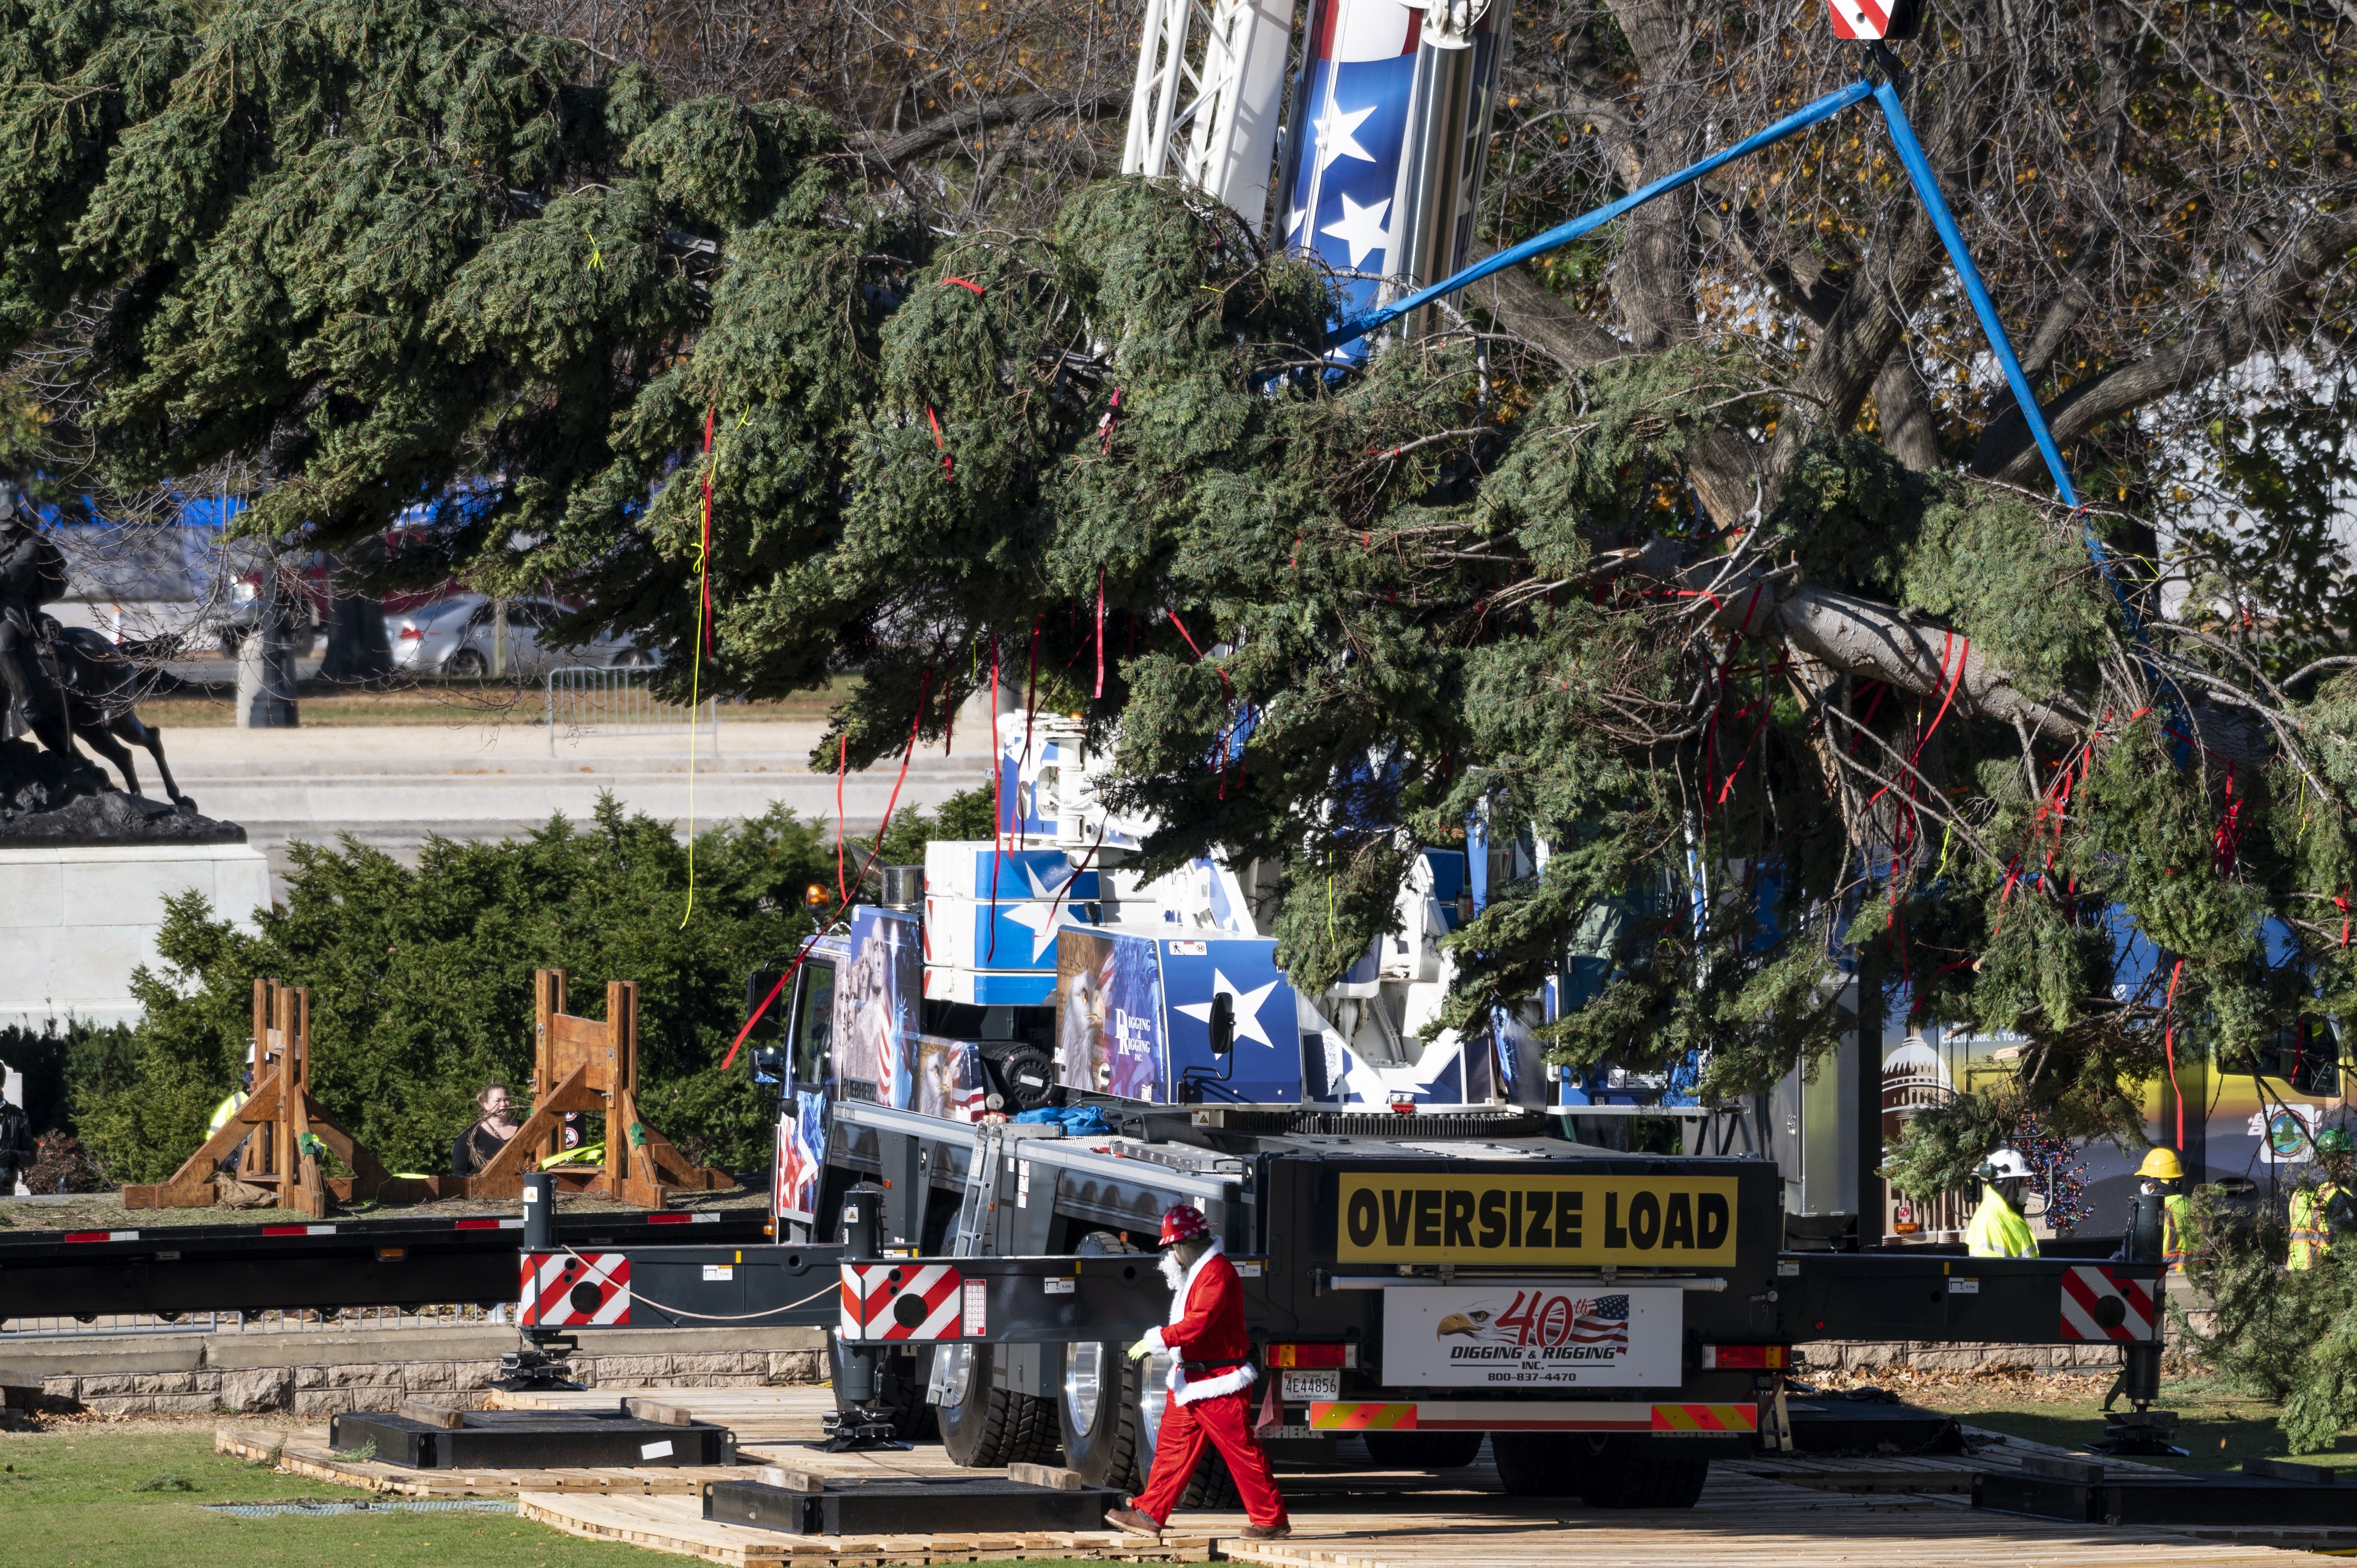 Το χριστουγεννιάτικο δέντρο του Καπιτωλίου των ΗΠΑ του 2021 υψώνεται από το φορτηγό με επίπεδη επιφάνεια στο δυτικό μέτωπο του Καπιτωλίου στις 19 Νοεμβρίου 2021.